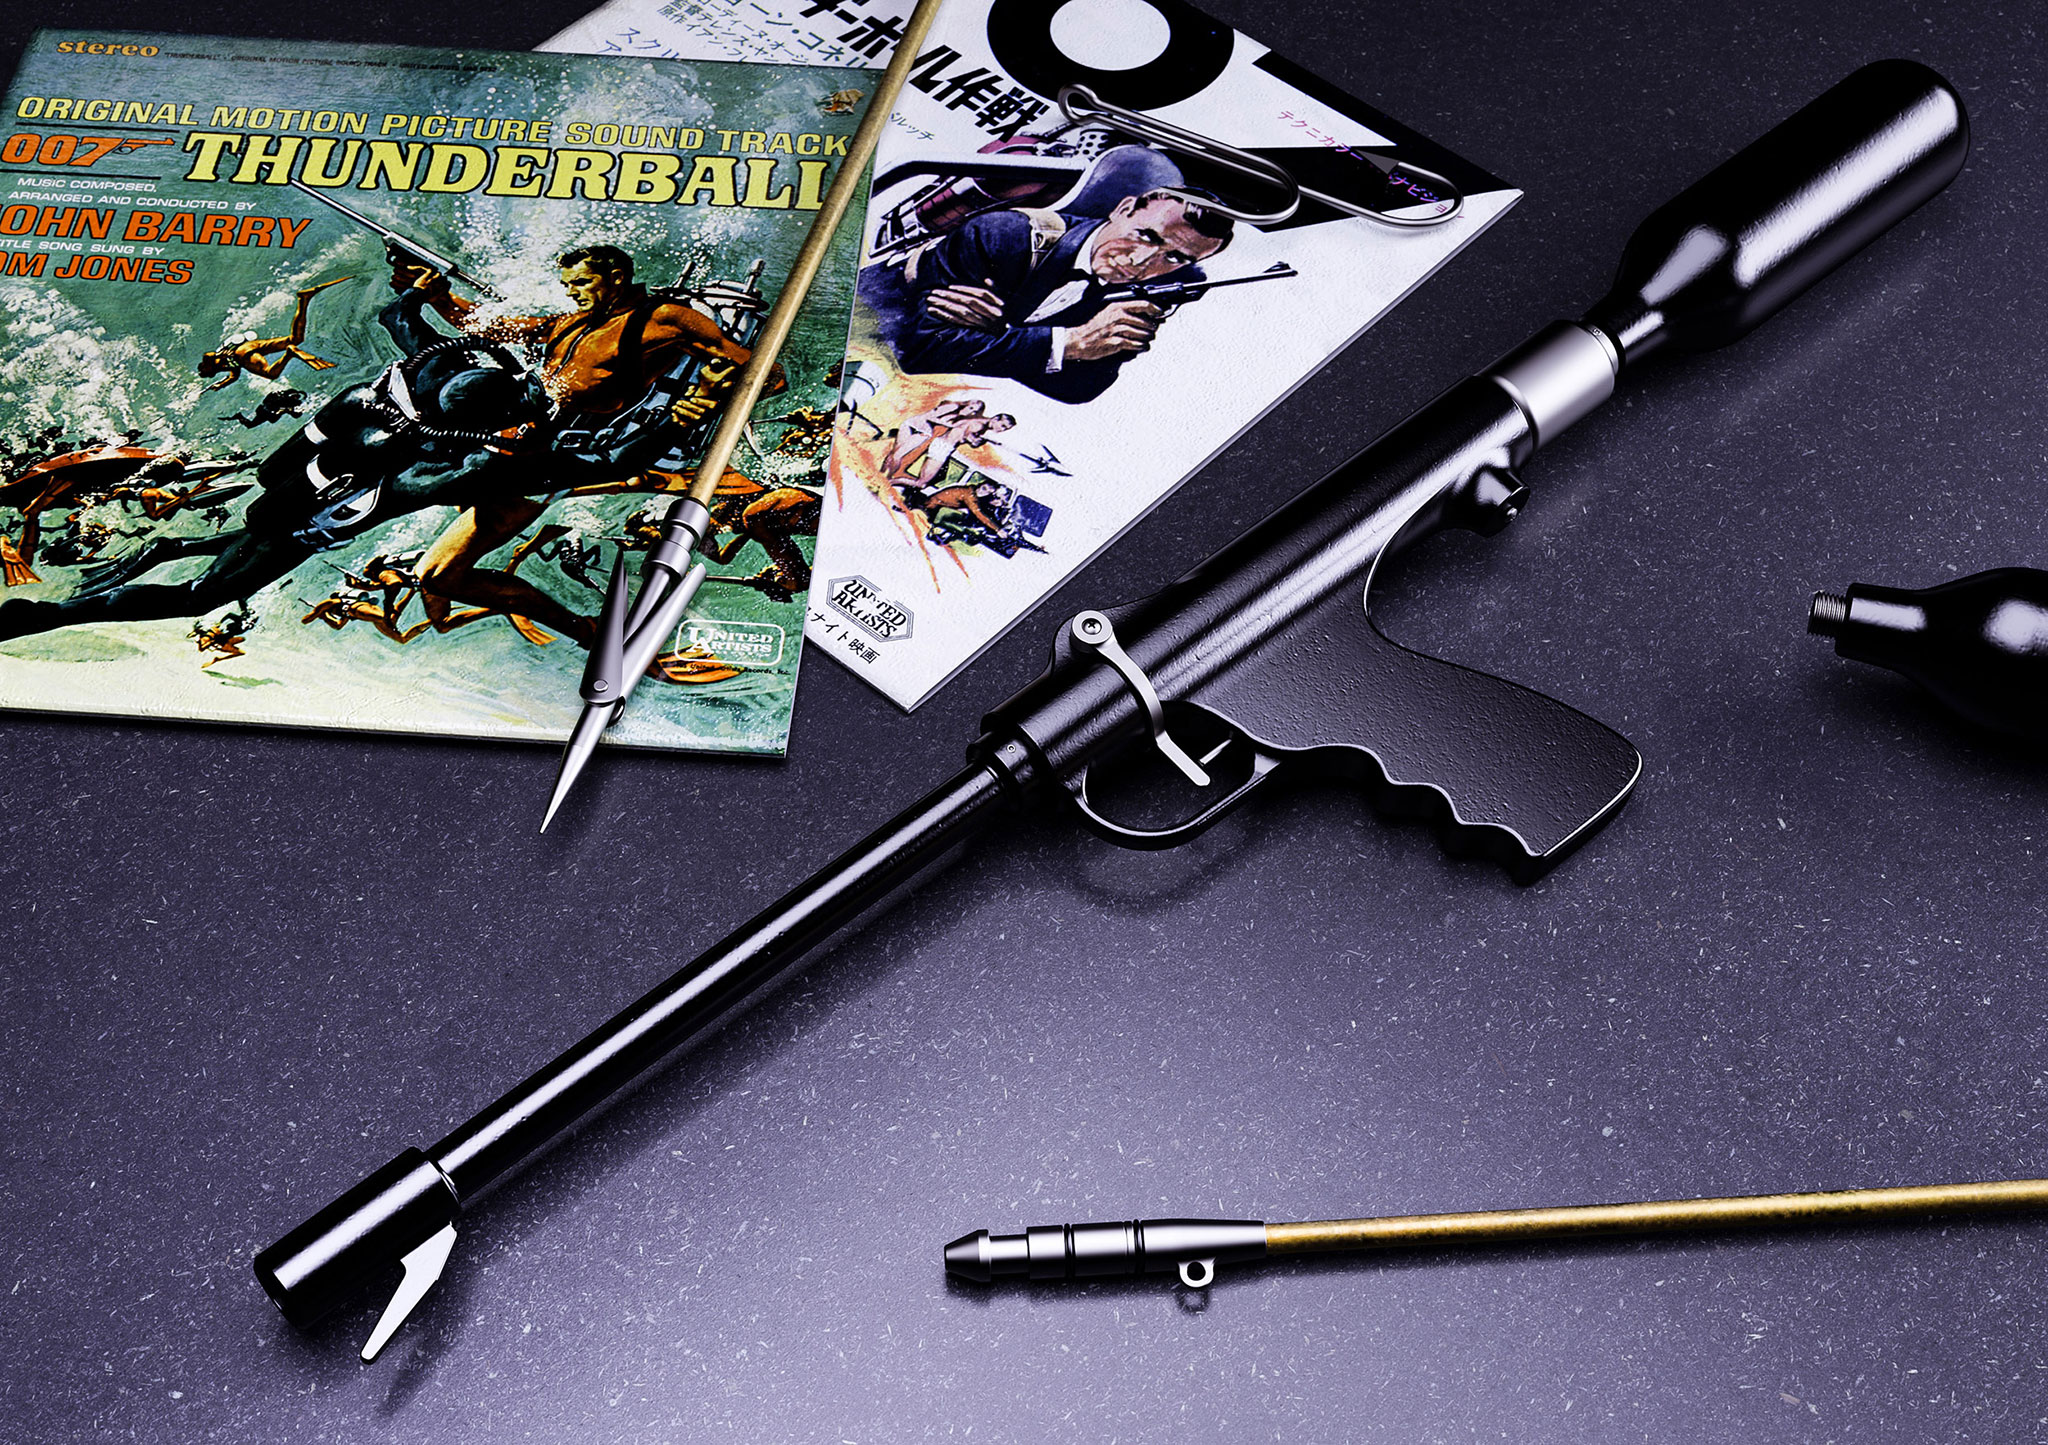 007 Speargun from Thunderball